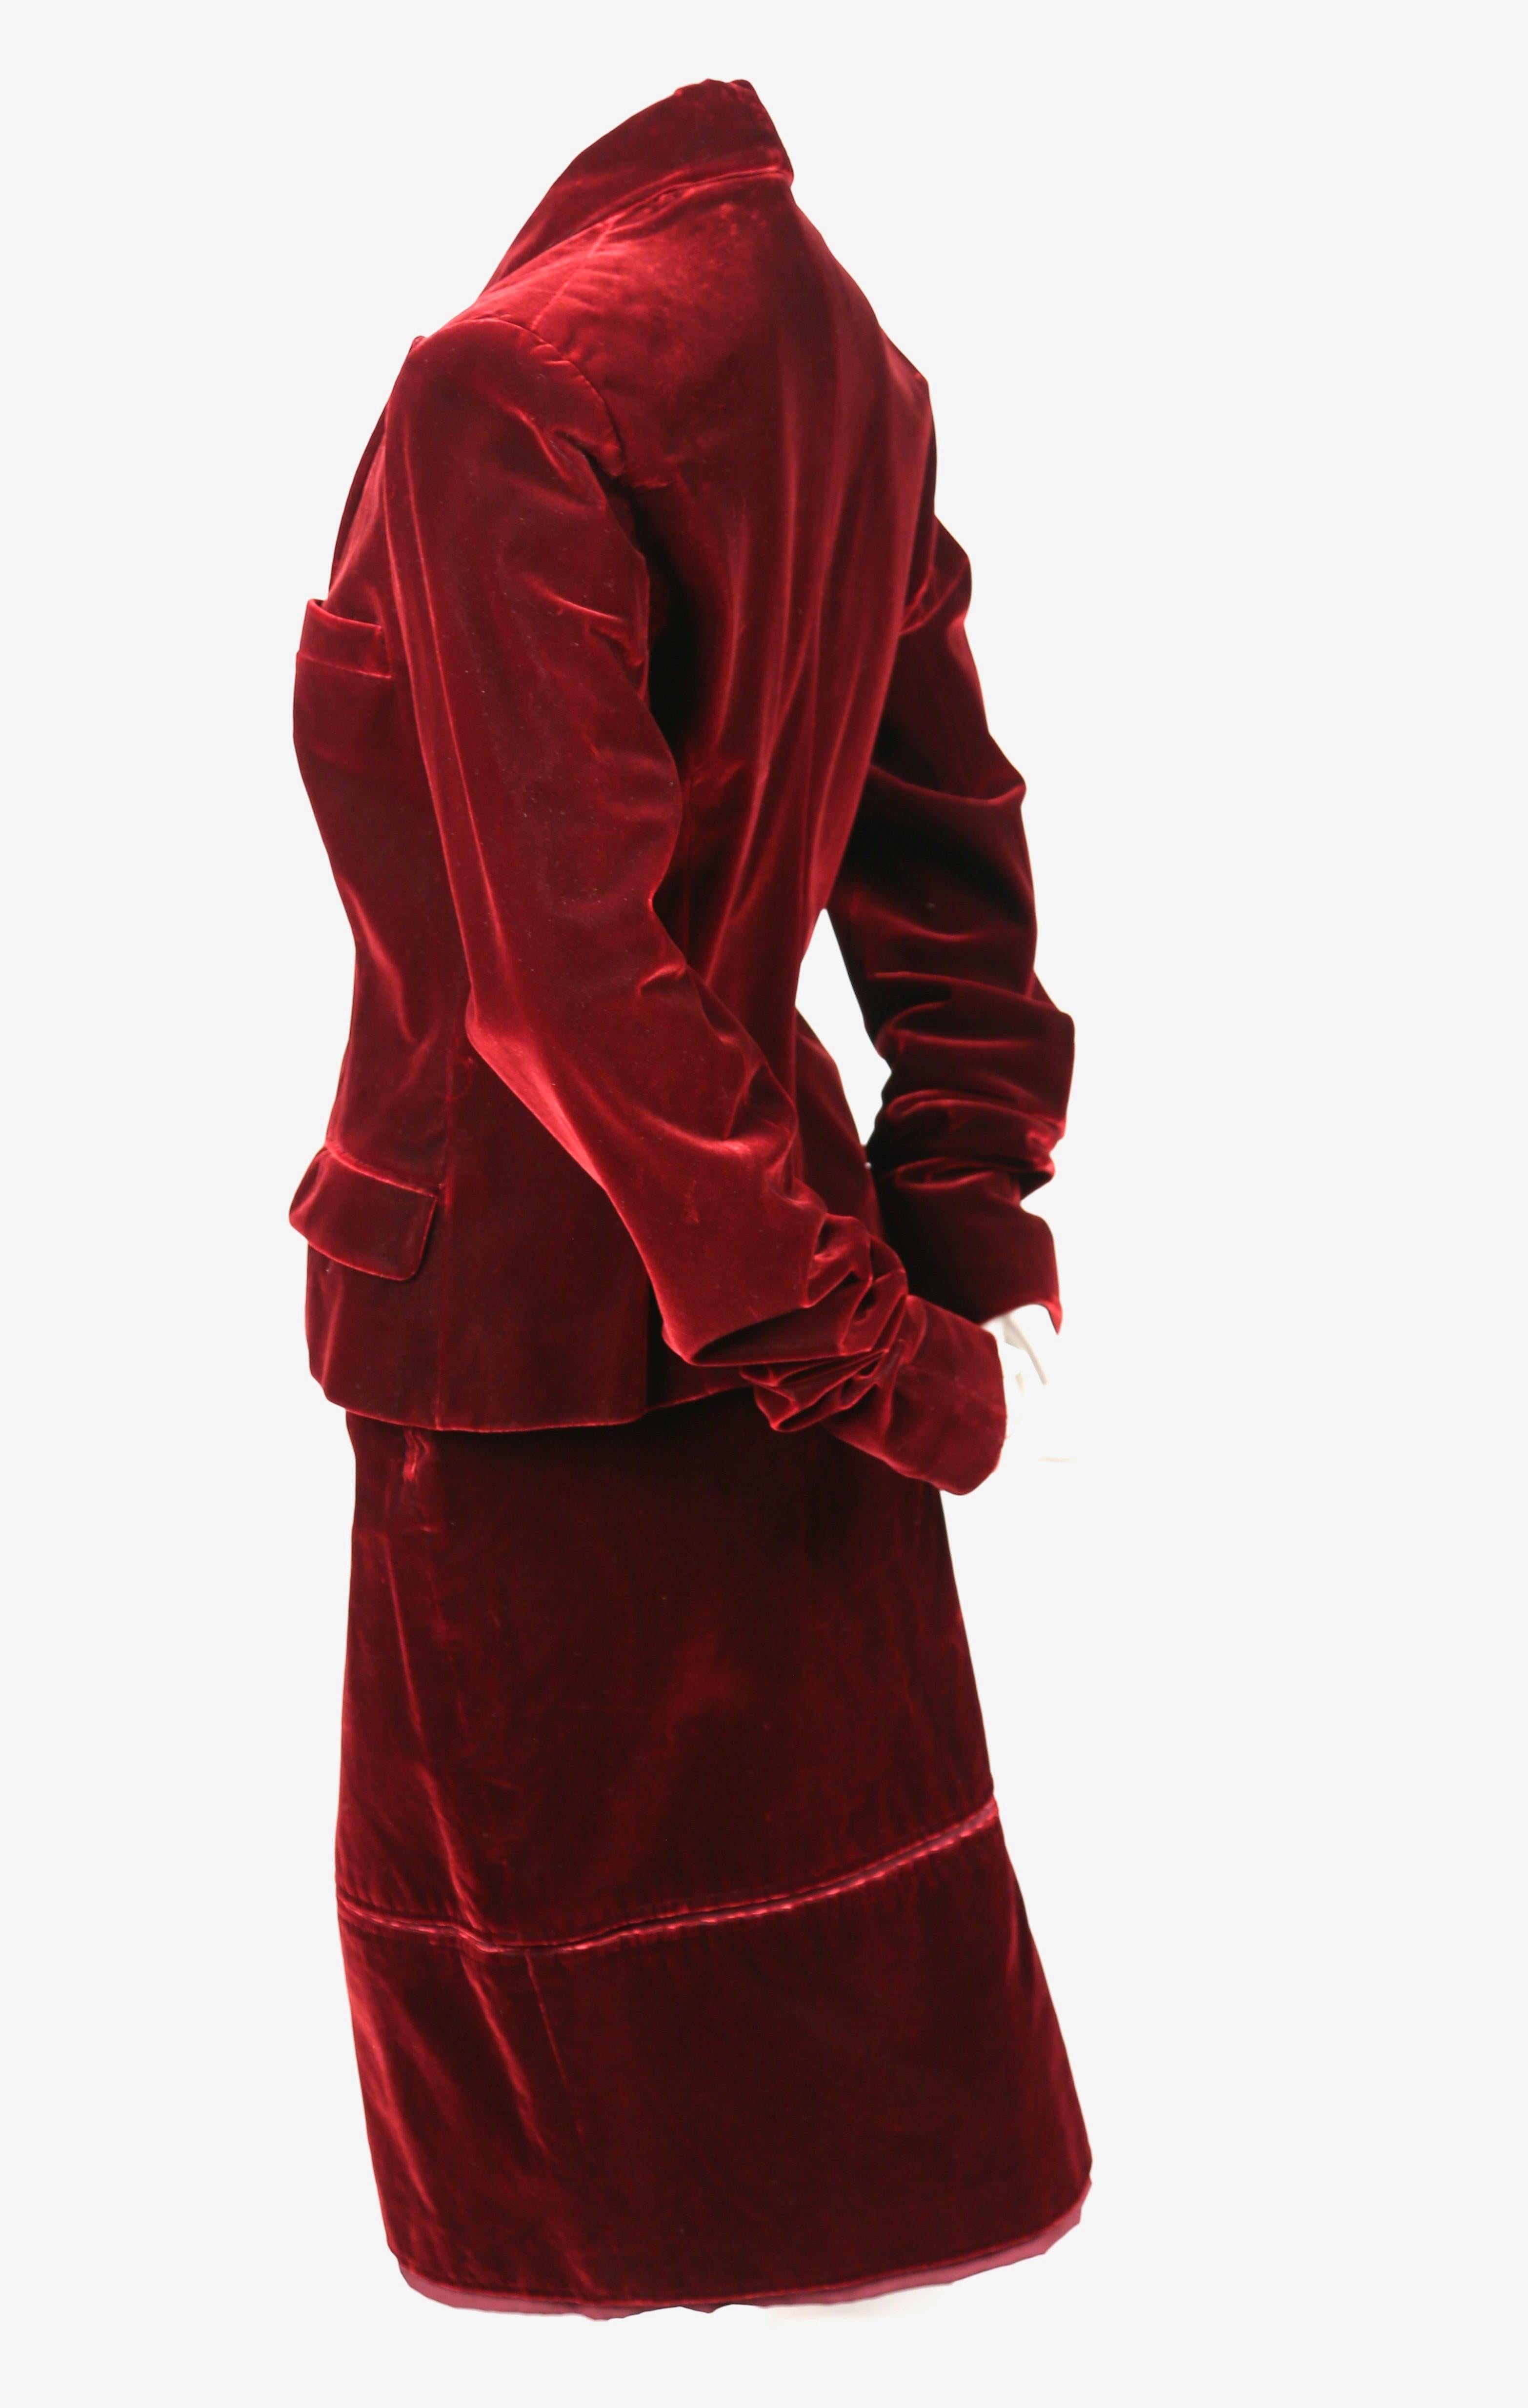 Tailleur jupe en velours bourgogne conçu par Tom Ford pour Yves Saint Laurent, tel qu'il a été présenté lors du défilé de l'automne 2002. Labellisée 42 français, la veste mesure 38